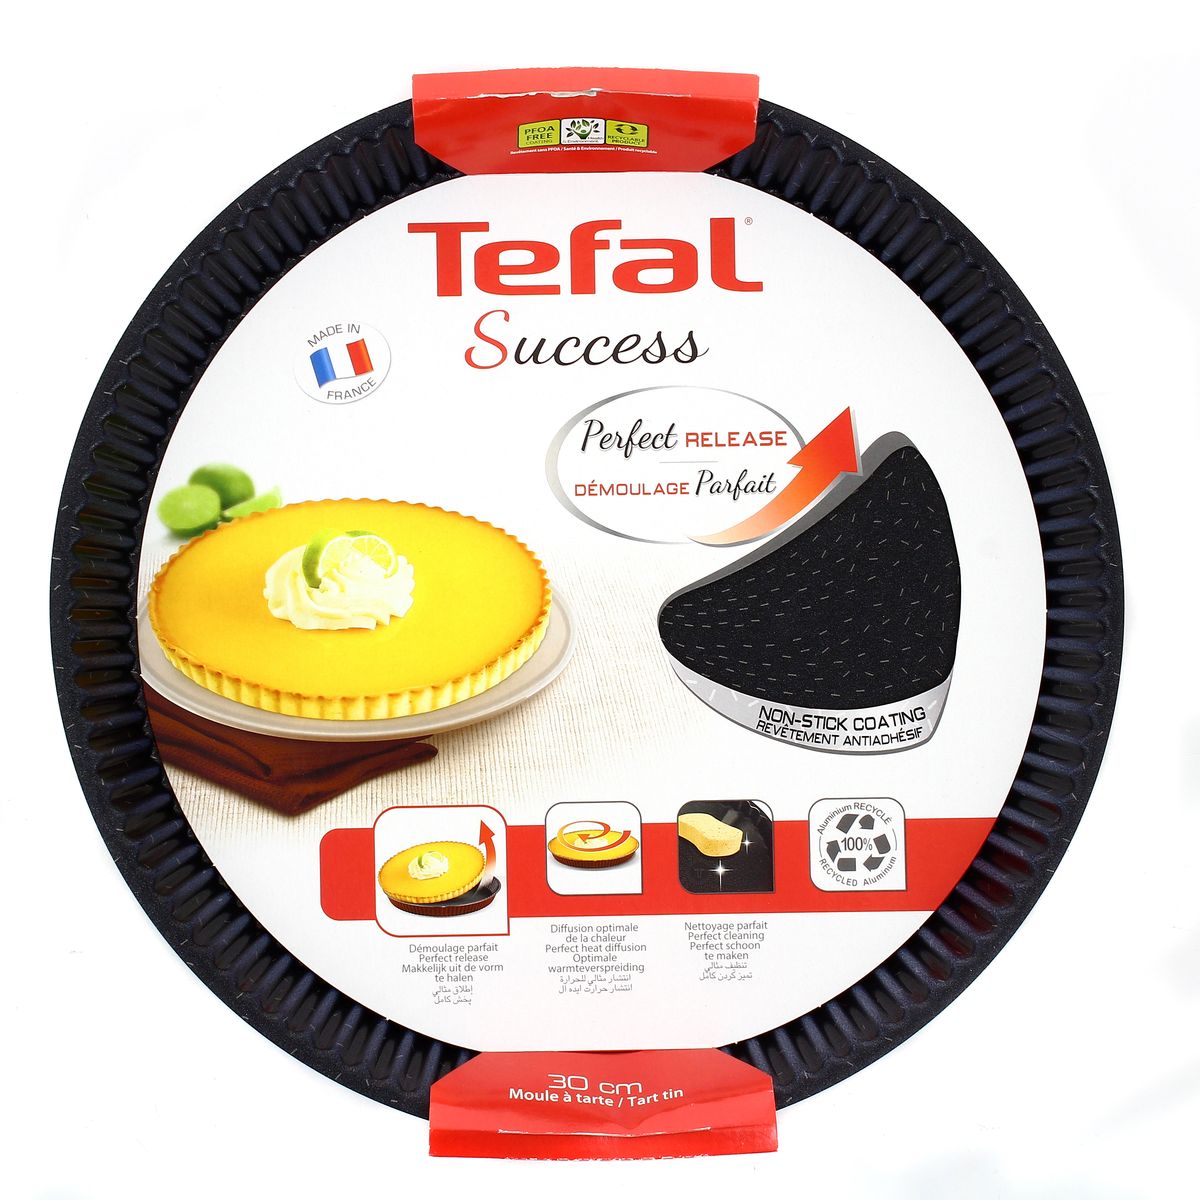 Tefal  Une offre incroyable  pour des gâteaux inratables